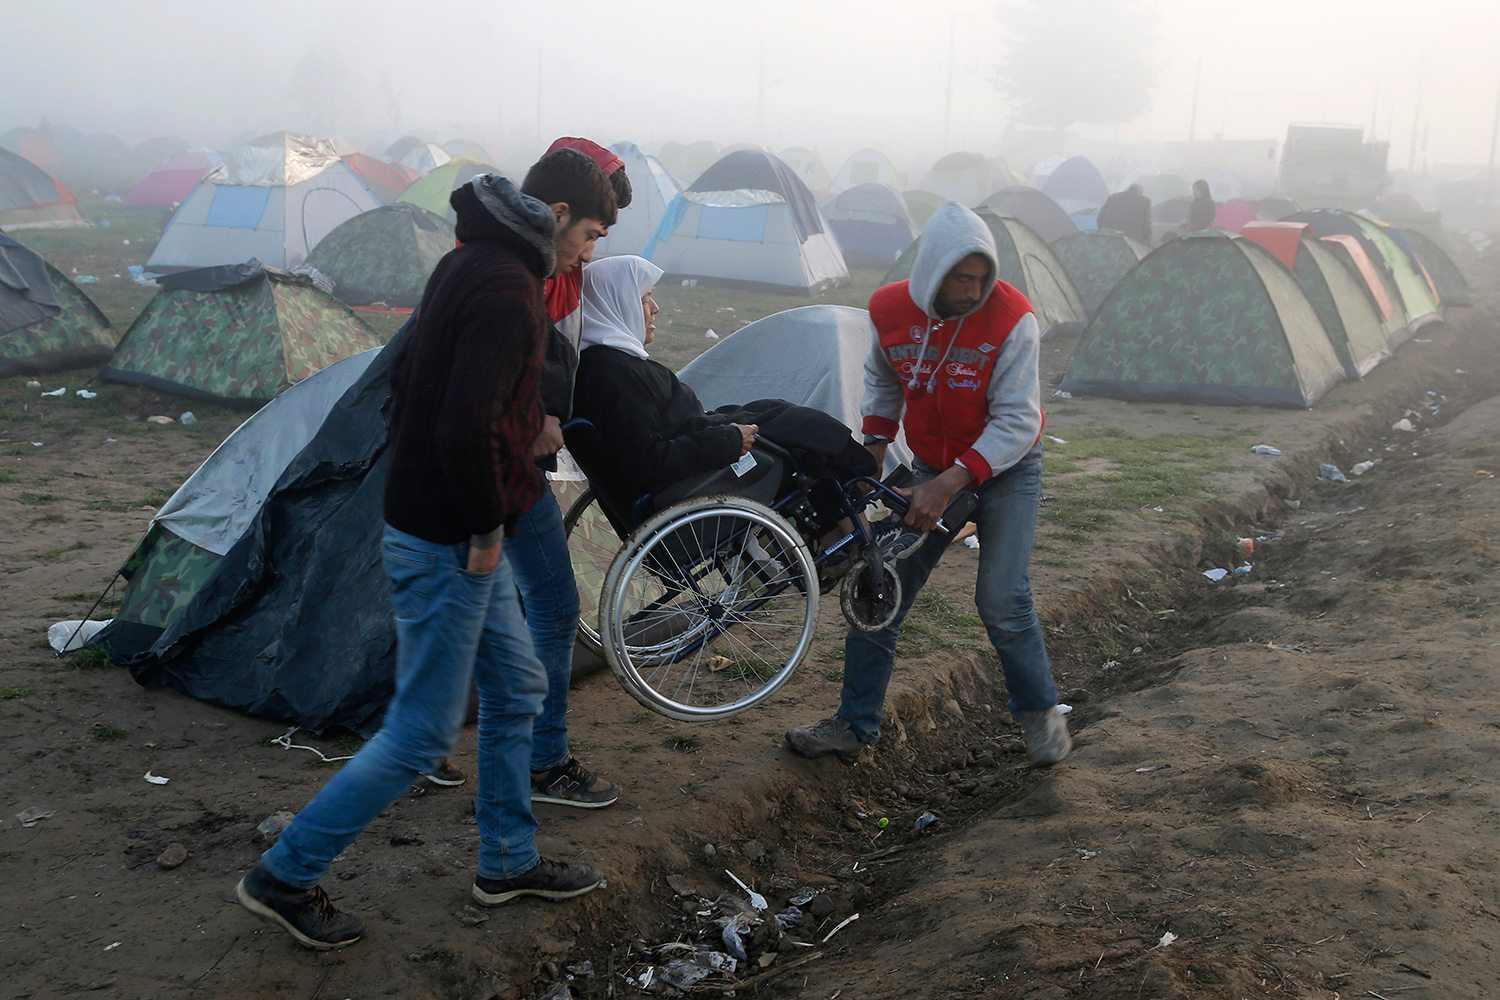 5.782 kilómetros km en silla de ruedas: una refugiada adolescente narra su periplo desde Alepo hasta Alemania